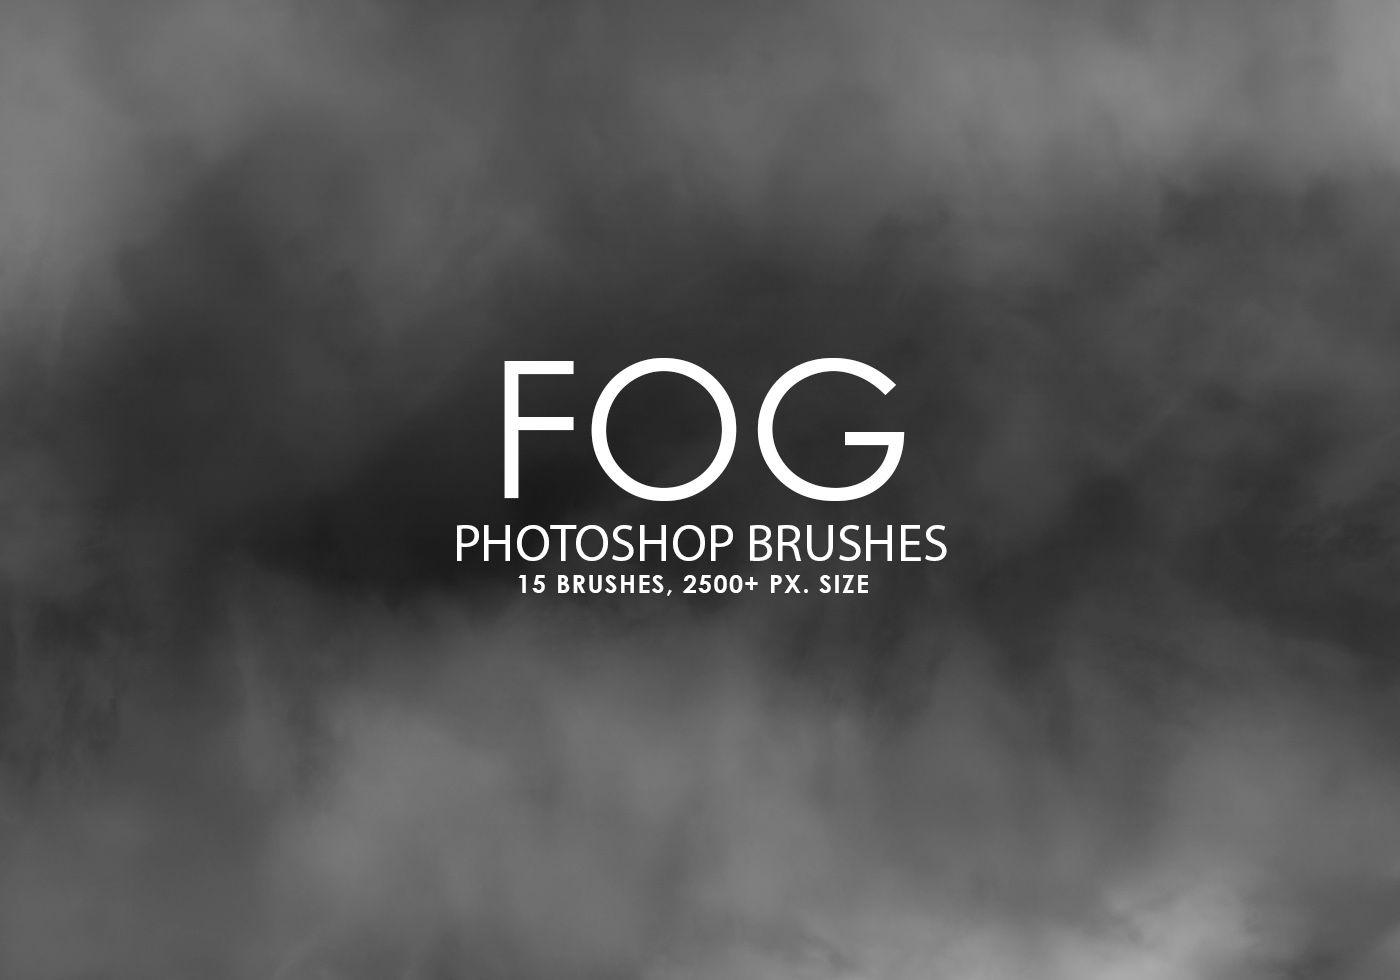 Photoshop Black and White Logo - Free Fog Photoshop Brushes - Free Photoshop Brushes at Brusheezy!